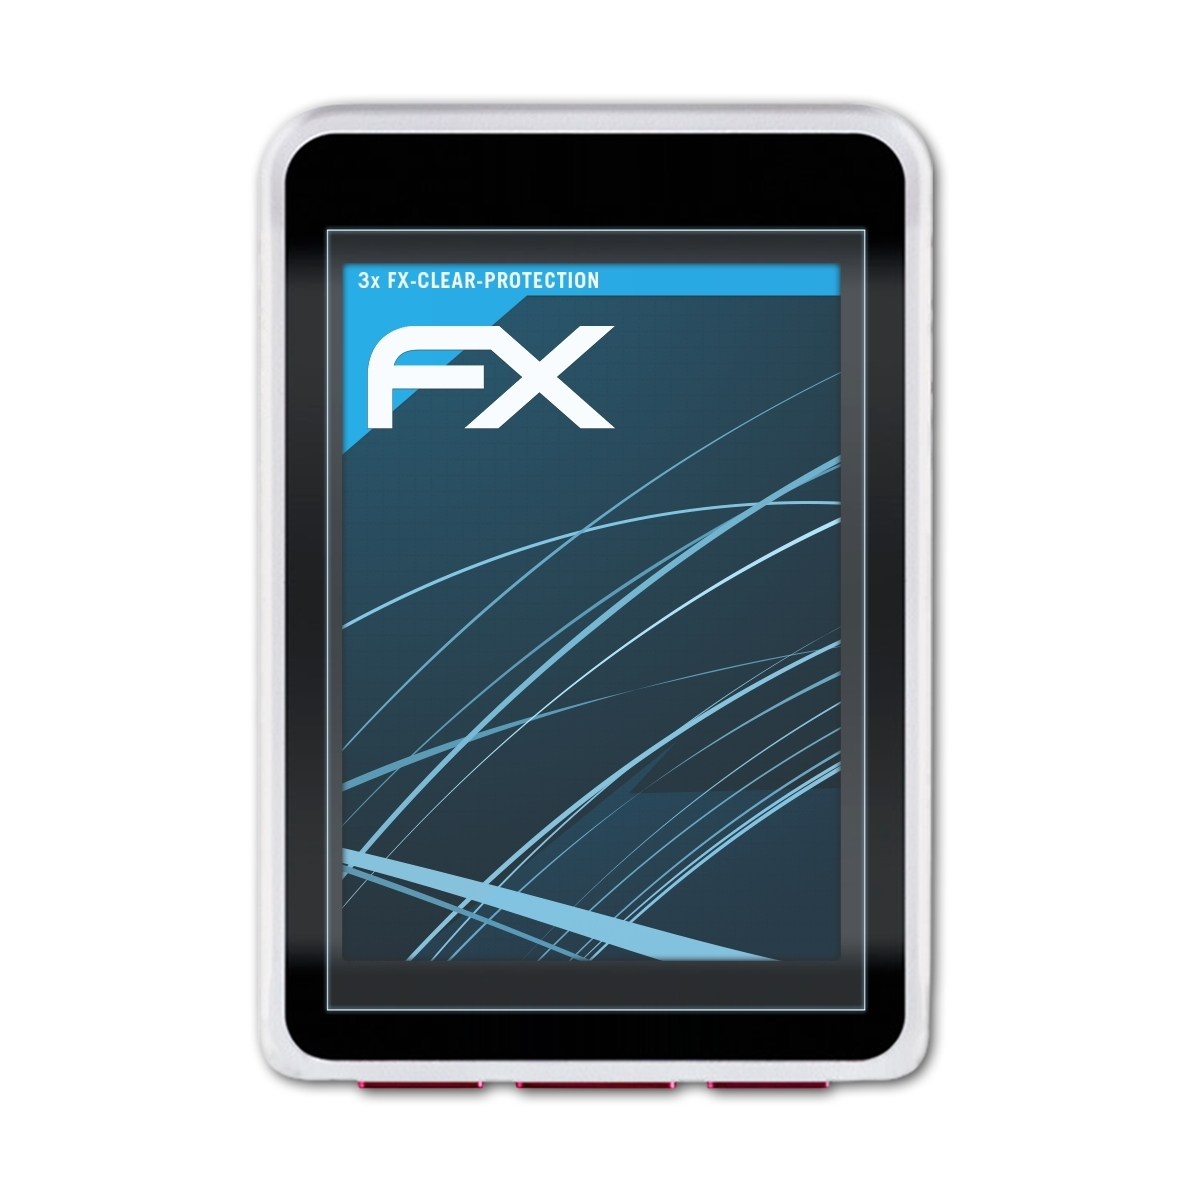 Displayschutz(für GPS) 3x VDO ATFOLIX FX-Clear M7